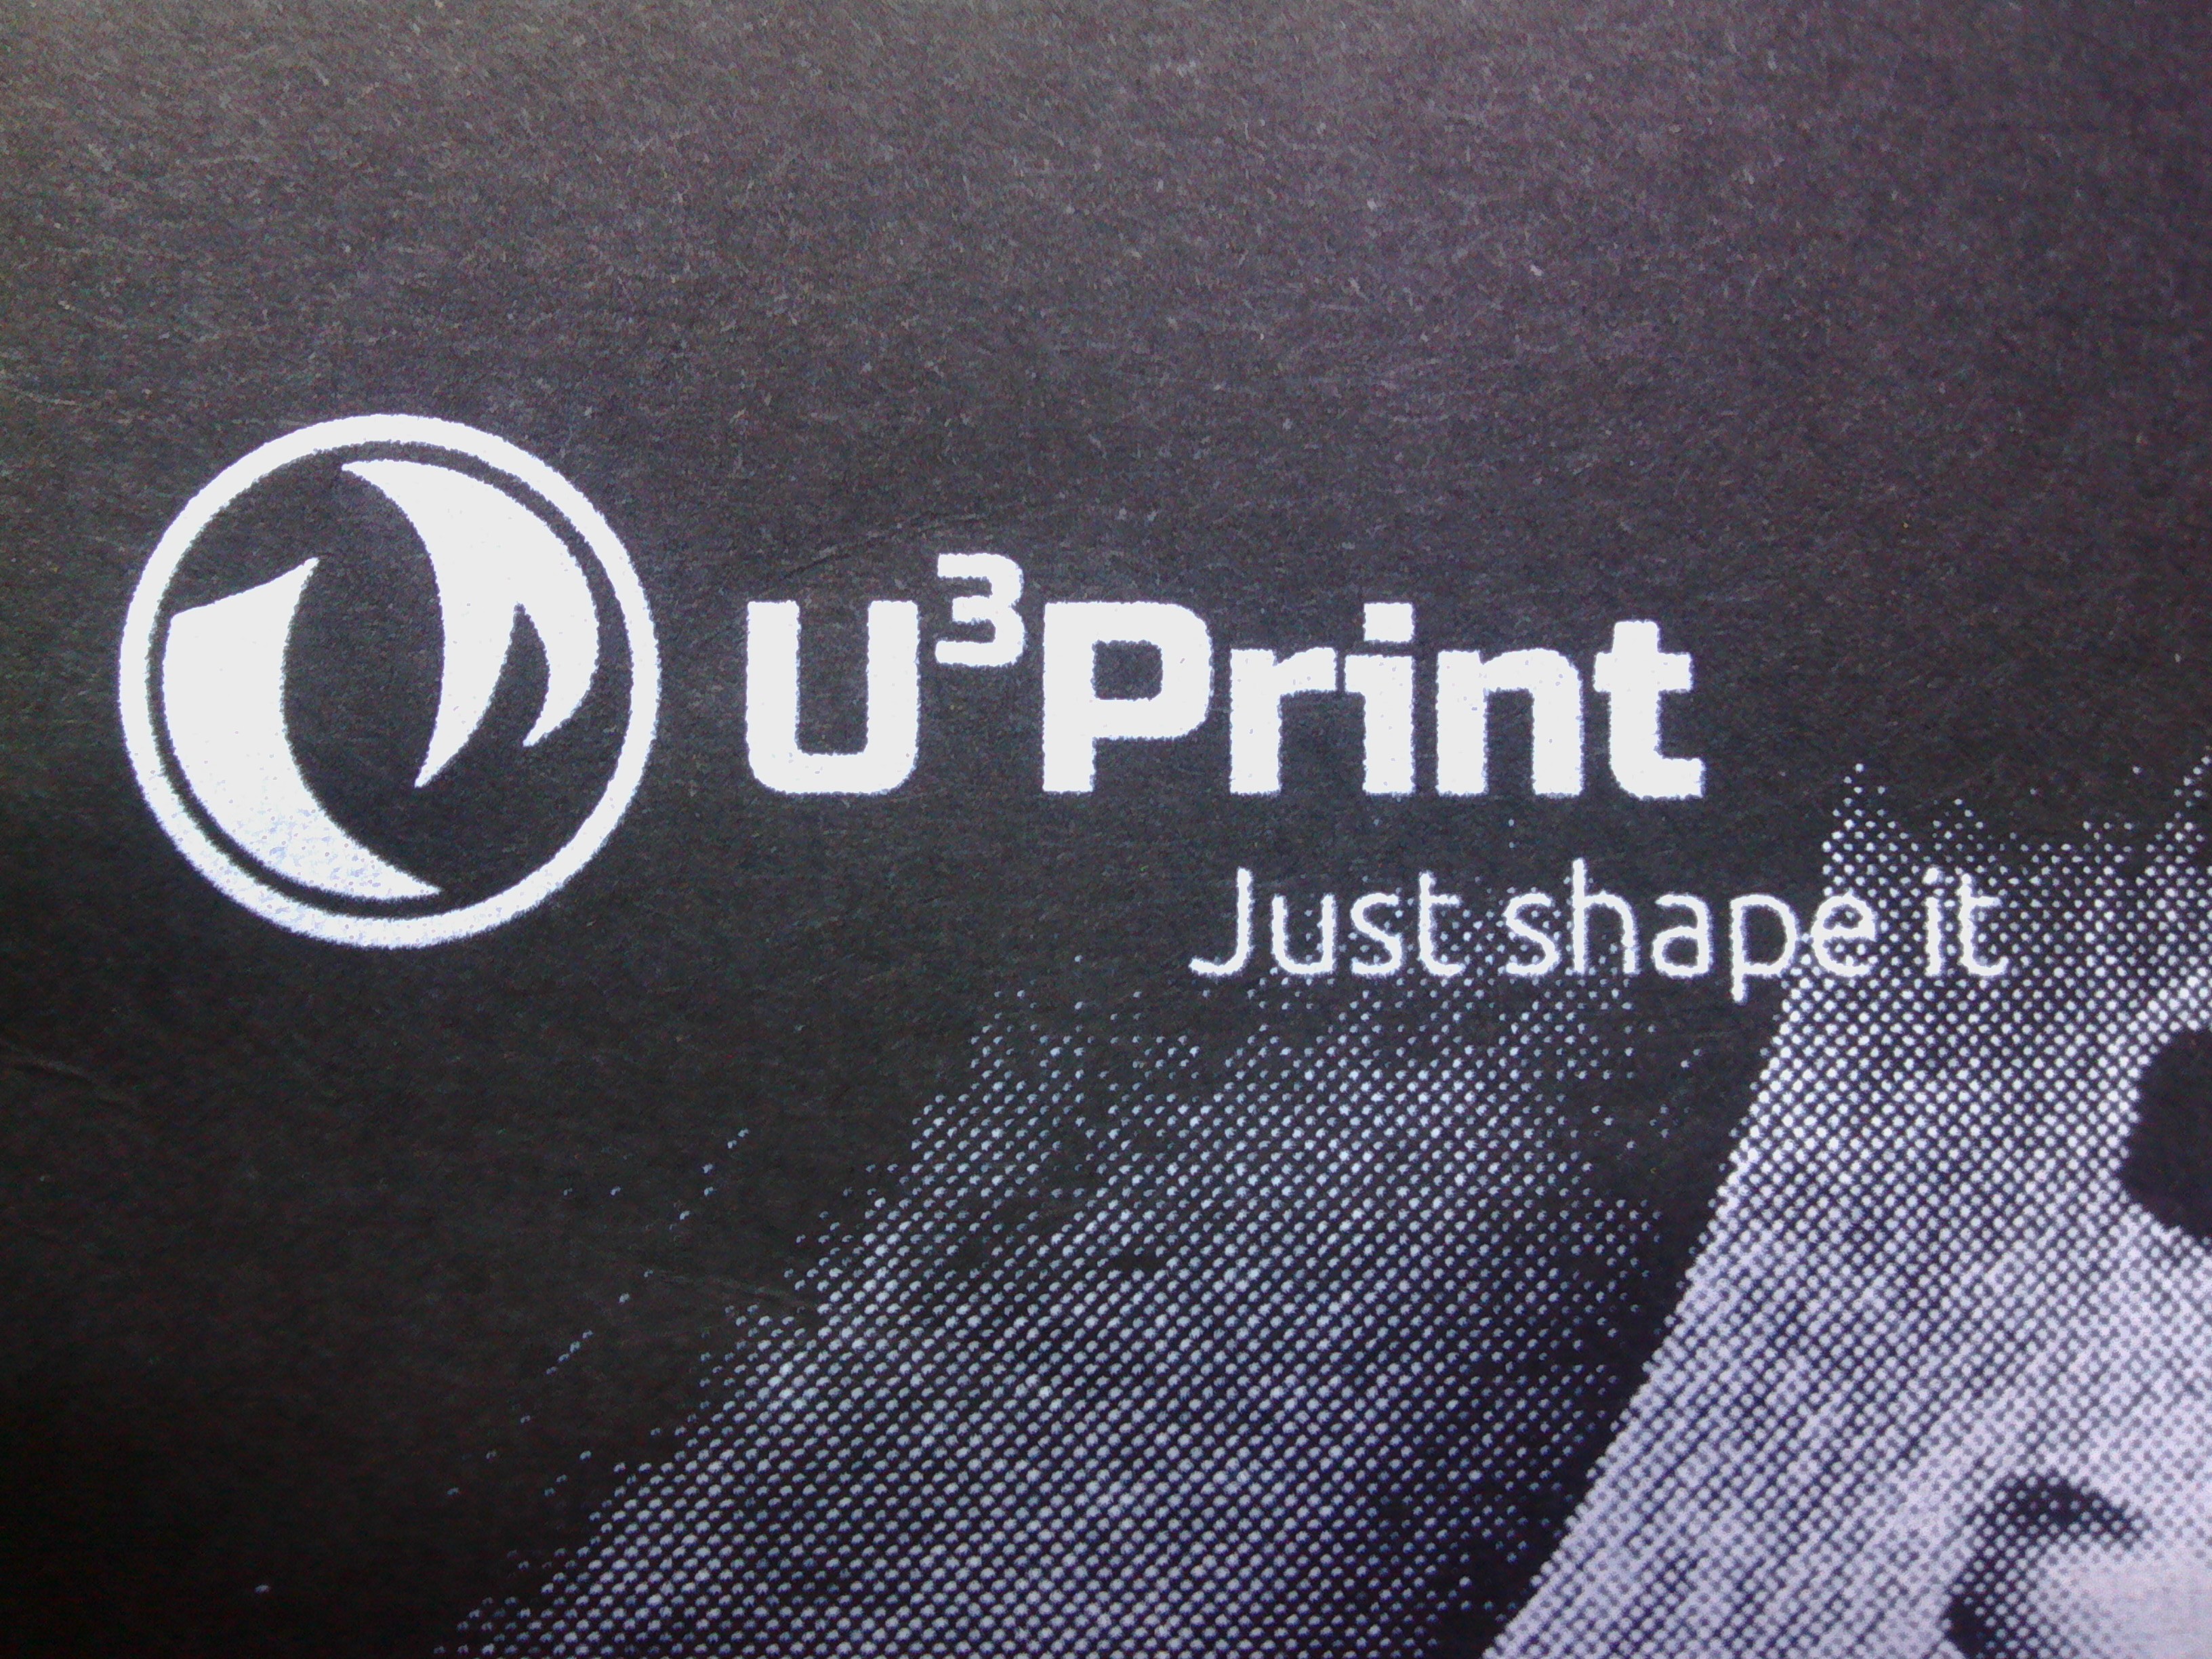 U3print